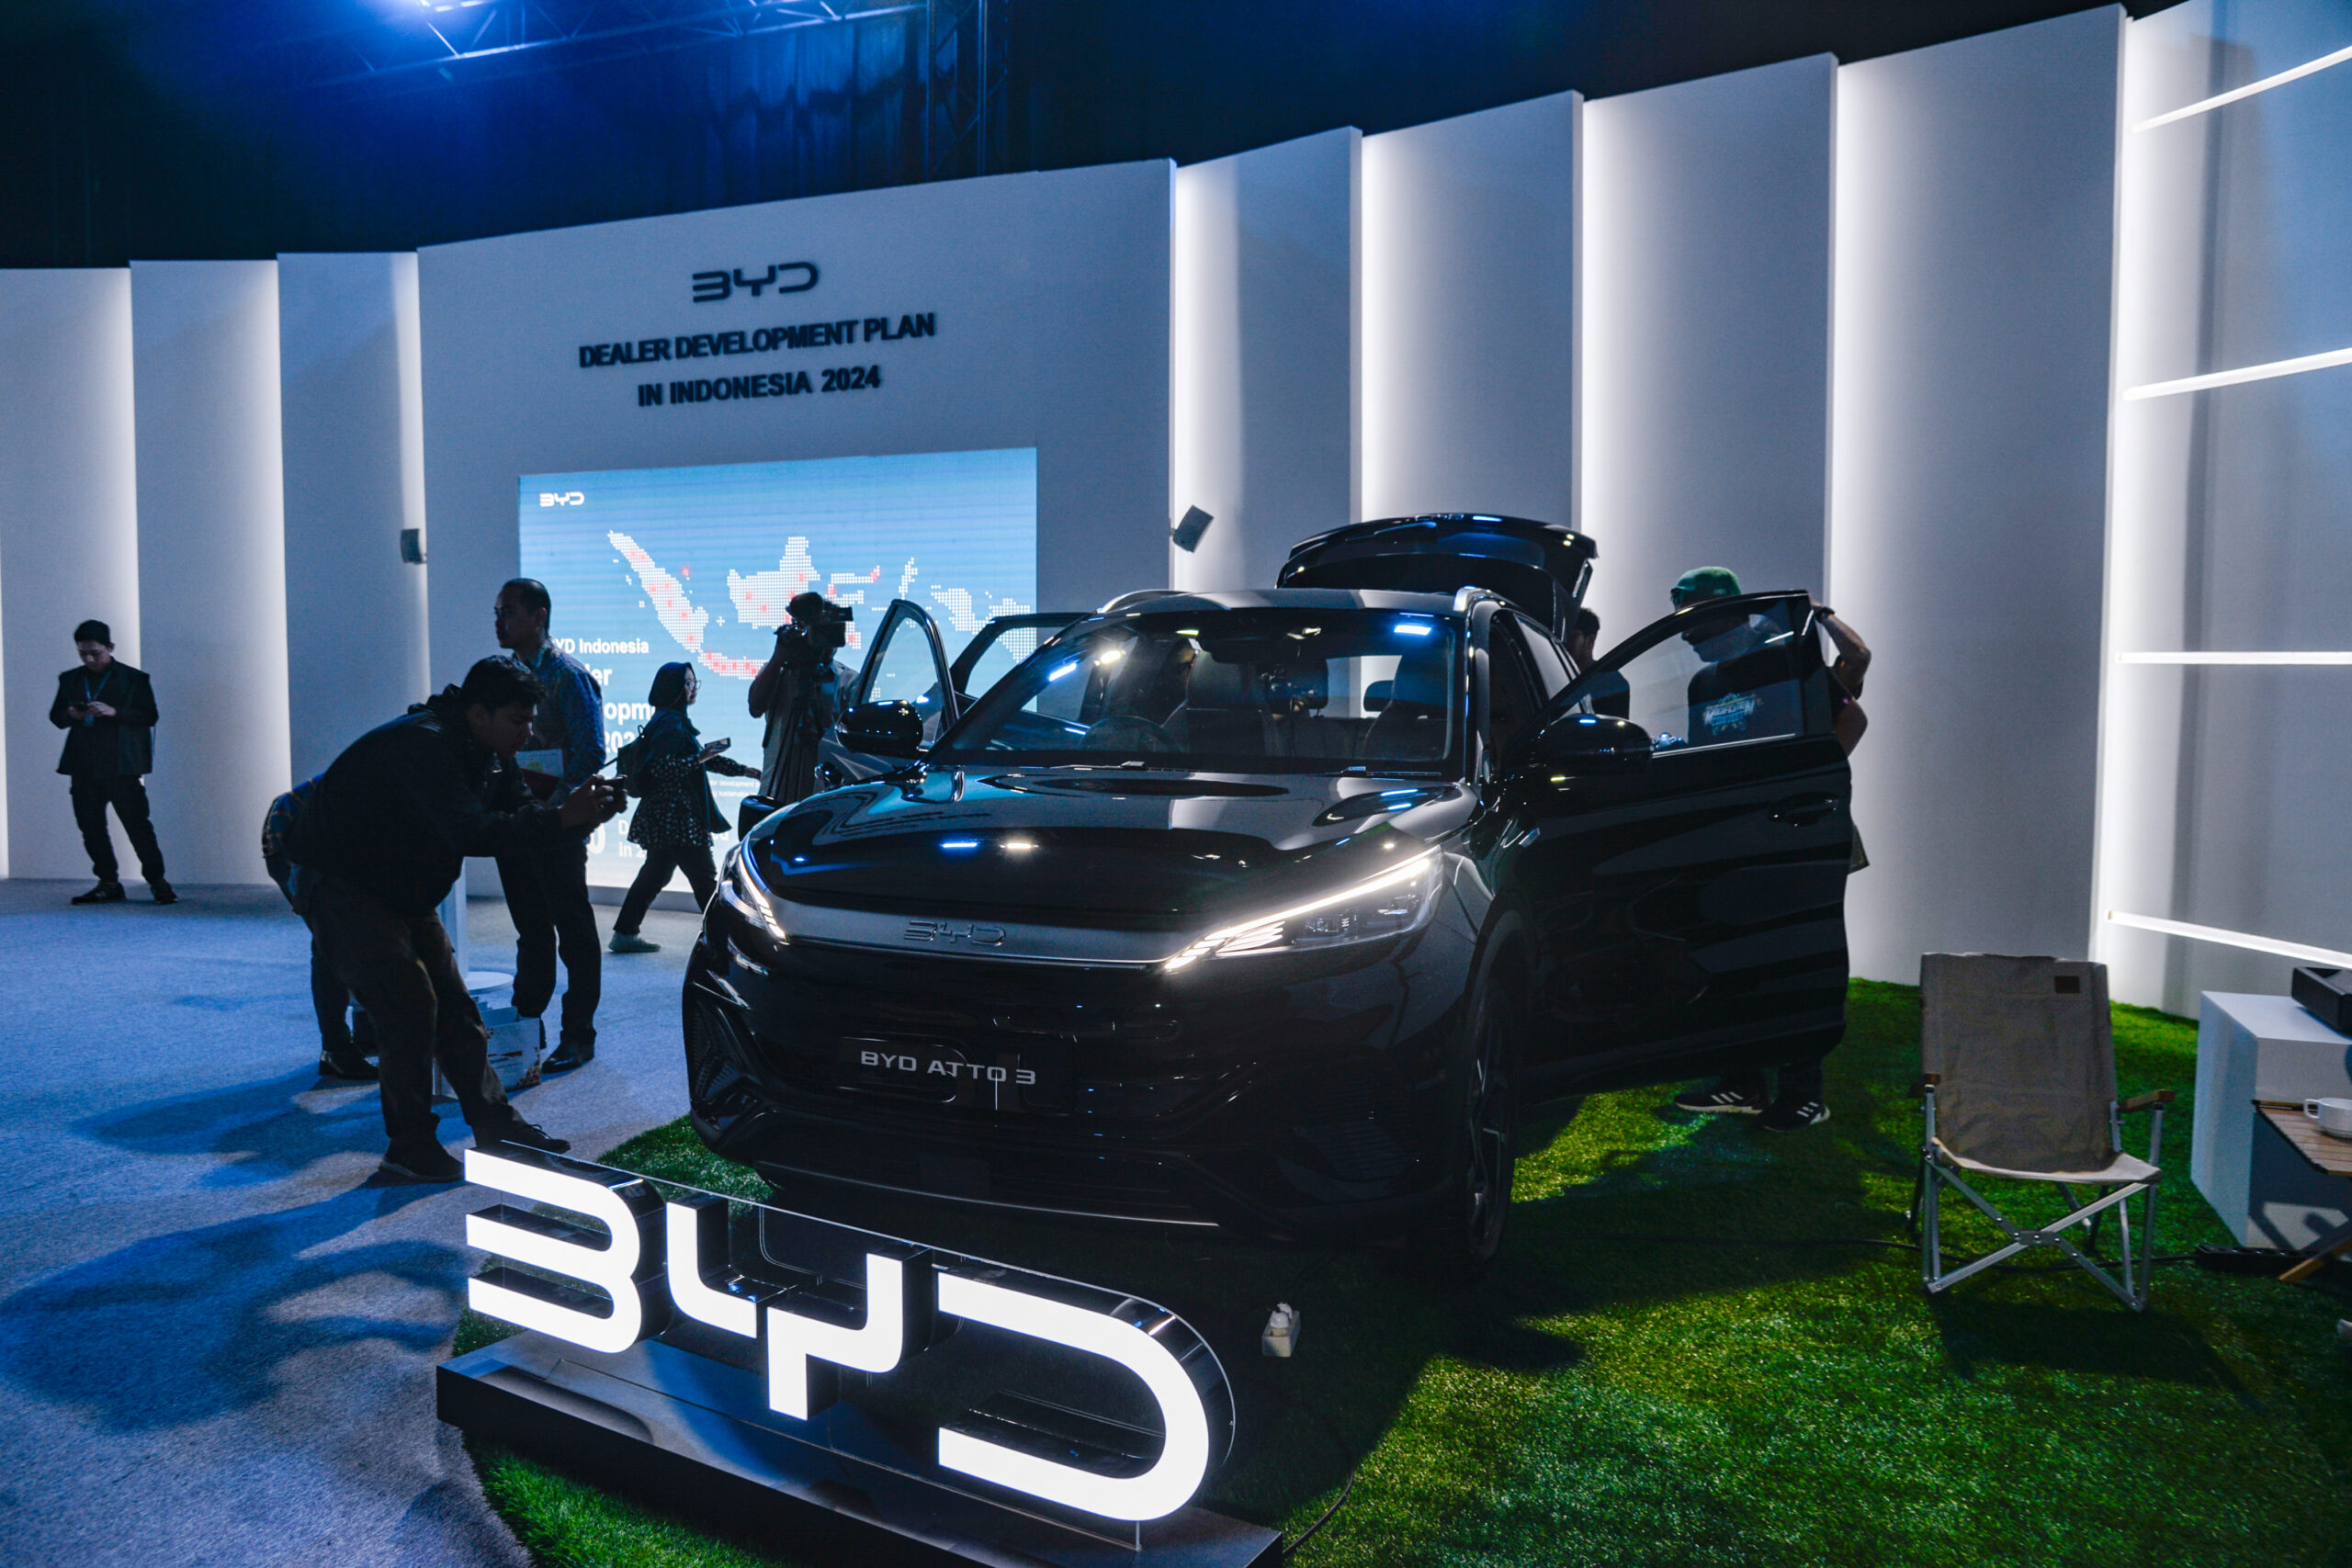 'บีวายดี' ส่งมอบรถยนต์ไฟฟ้าล็อตแรกใน 'ฮังการี' แพลนรุกตลาดต่อเนื่อง